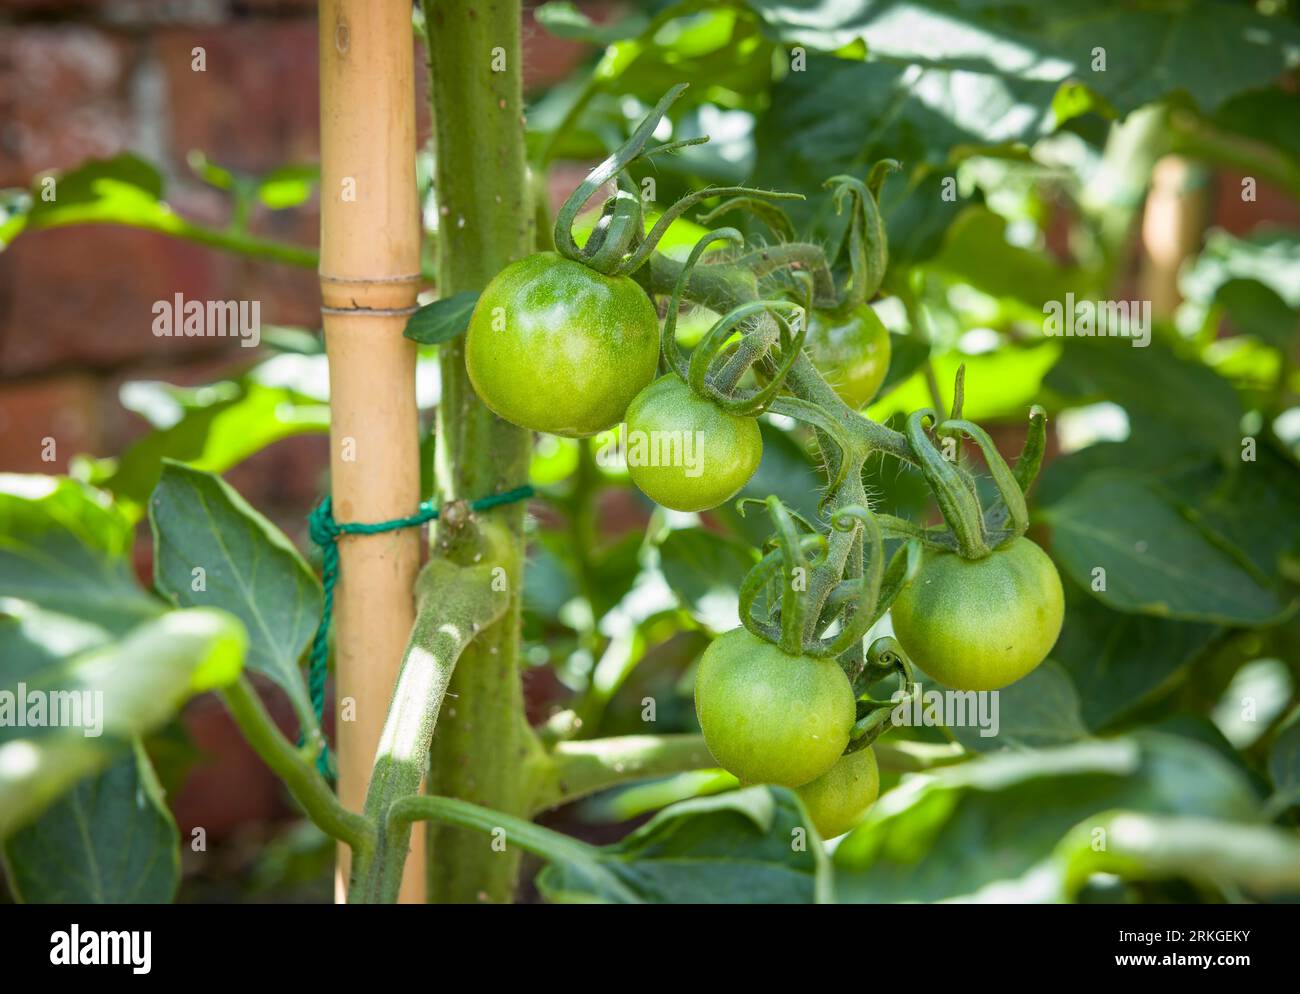 Tomates vertes poussant sur une variété ailsa craig, plante de tomate de vigne indéterminée (cordon) dans un jardin britannique. Tomates non mûres mûrissant à l'extérieur. Banque D'Images